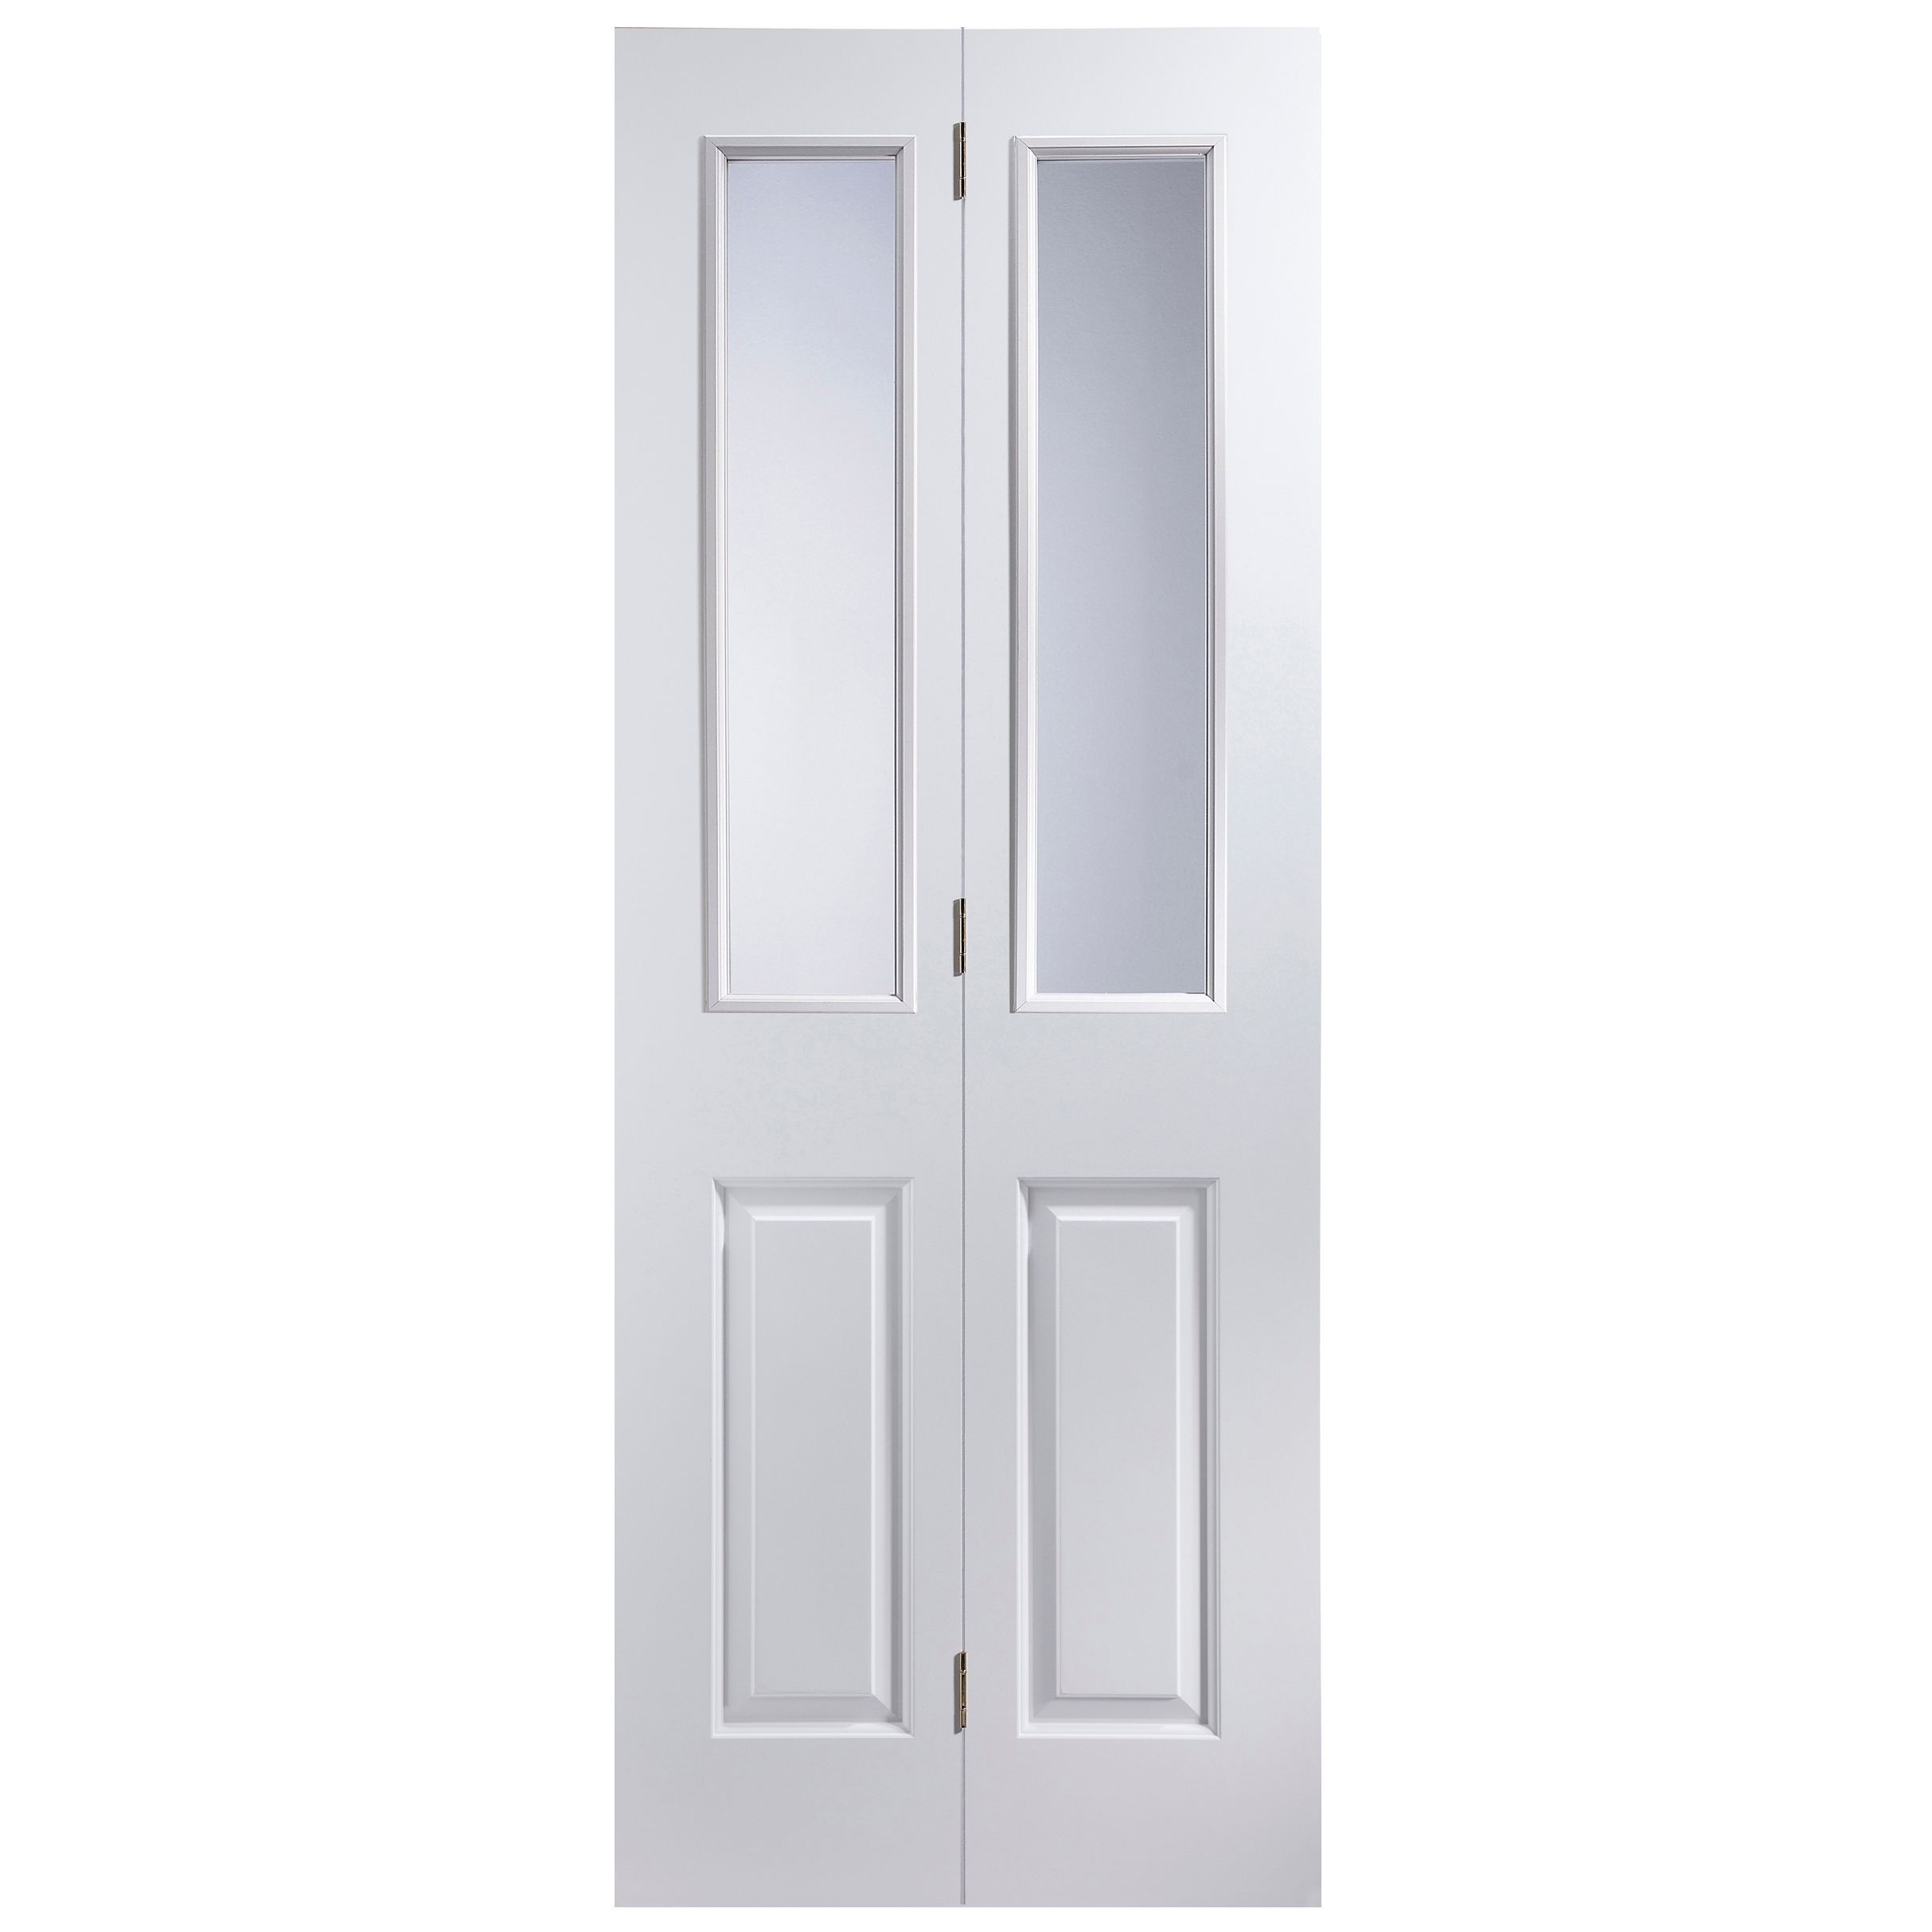 4 panel 2 Lite Primed Bi-fold Door set, (H)1950mm (W)674mm